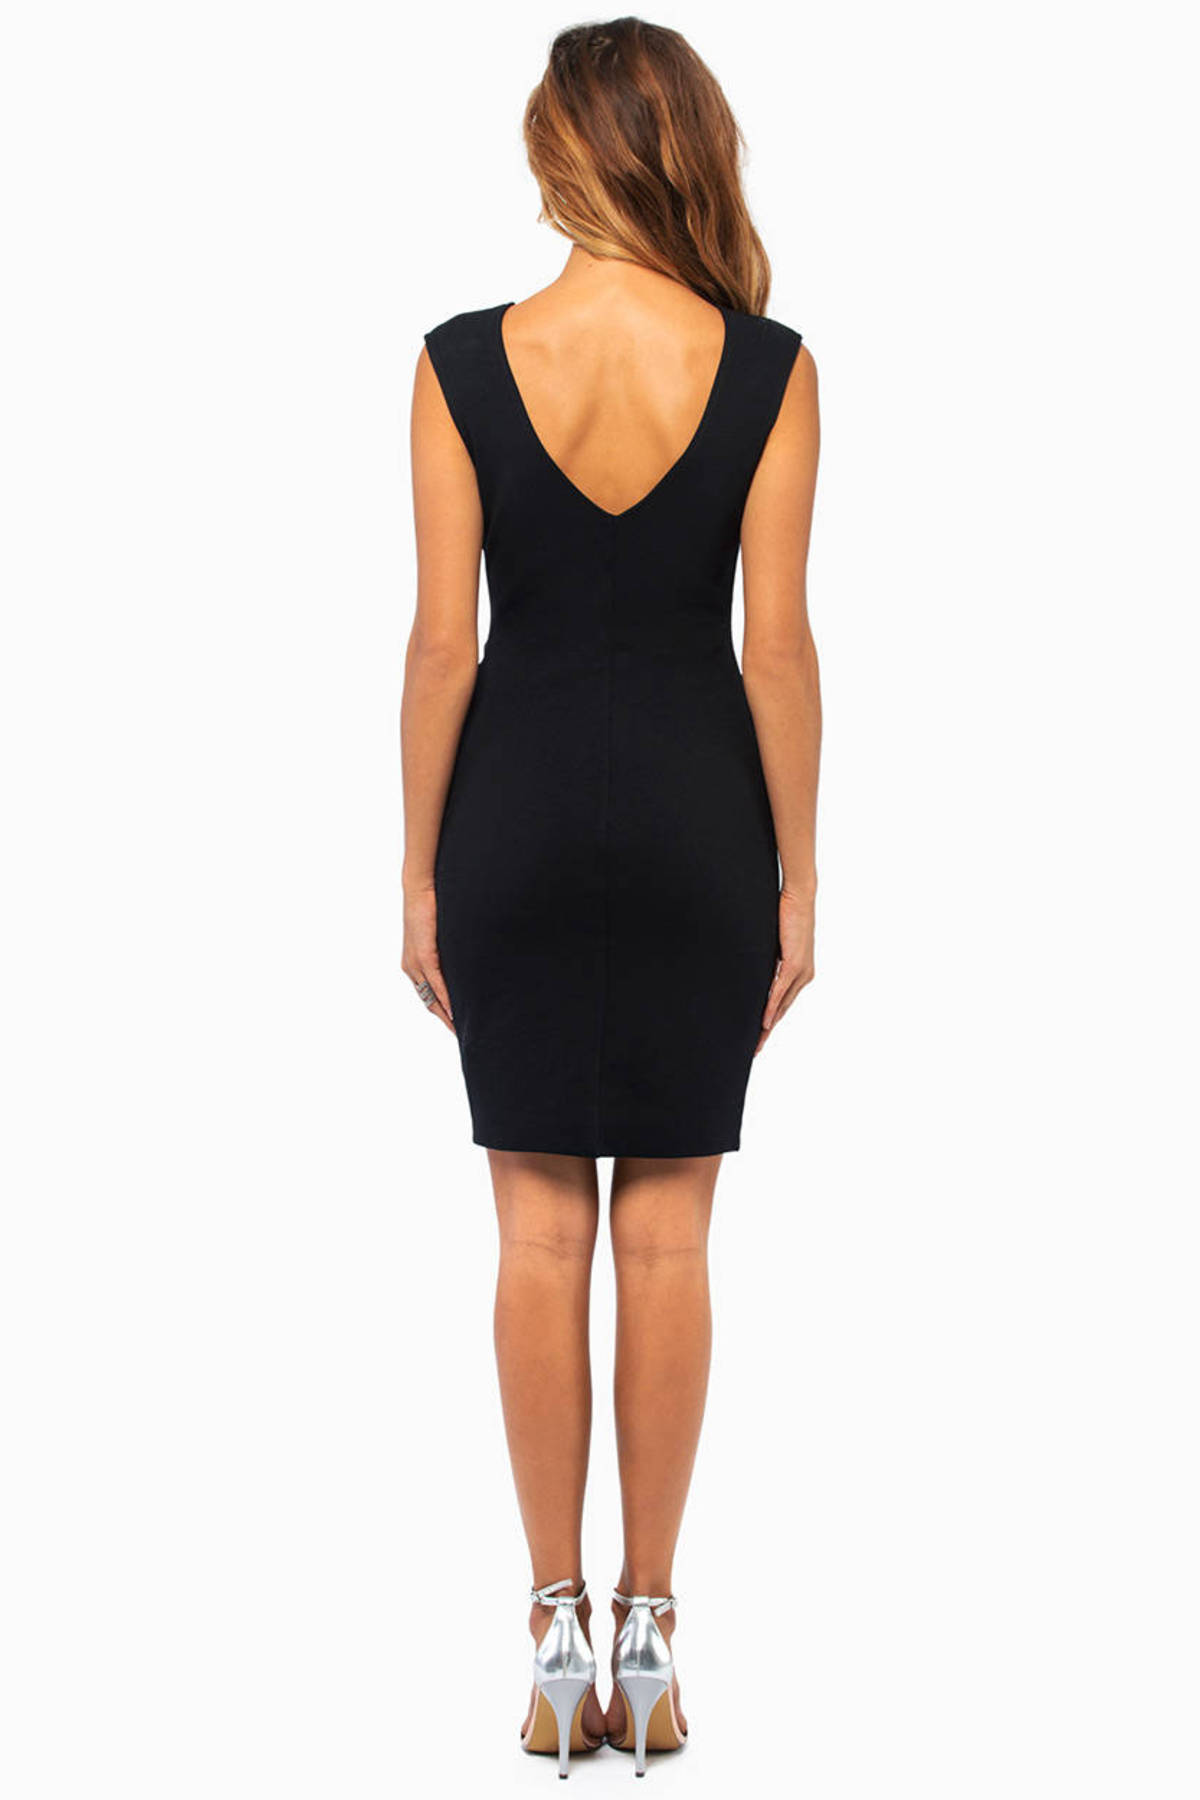 Laina Bodycon Dress in Black - $29 | Tobi US